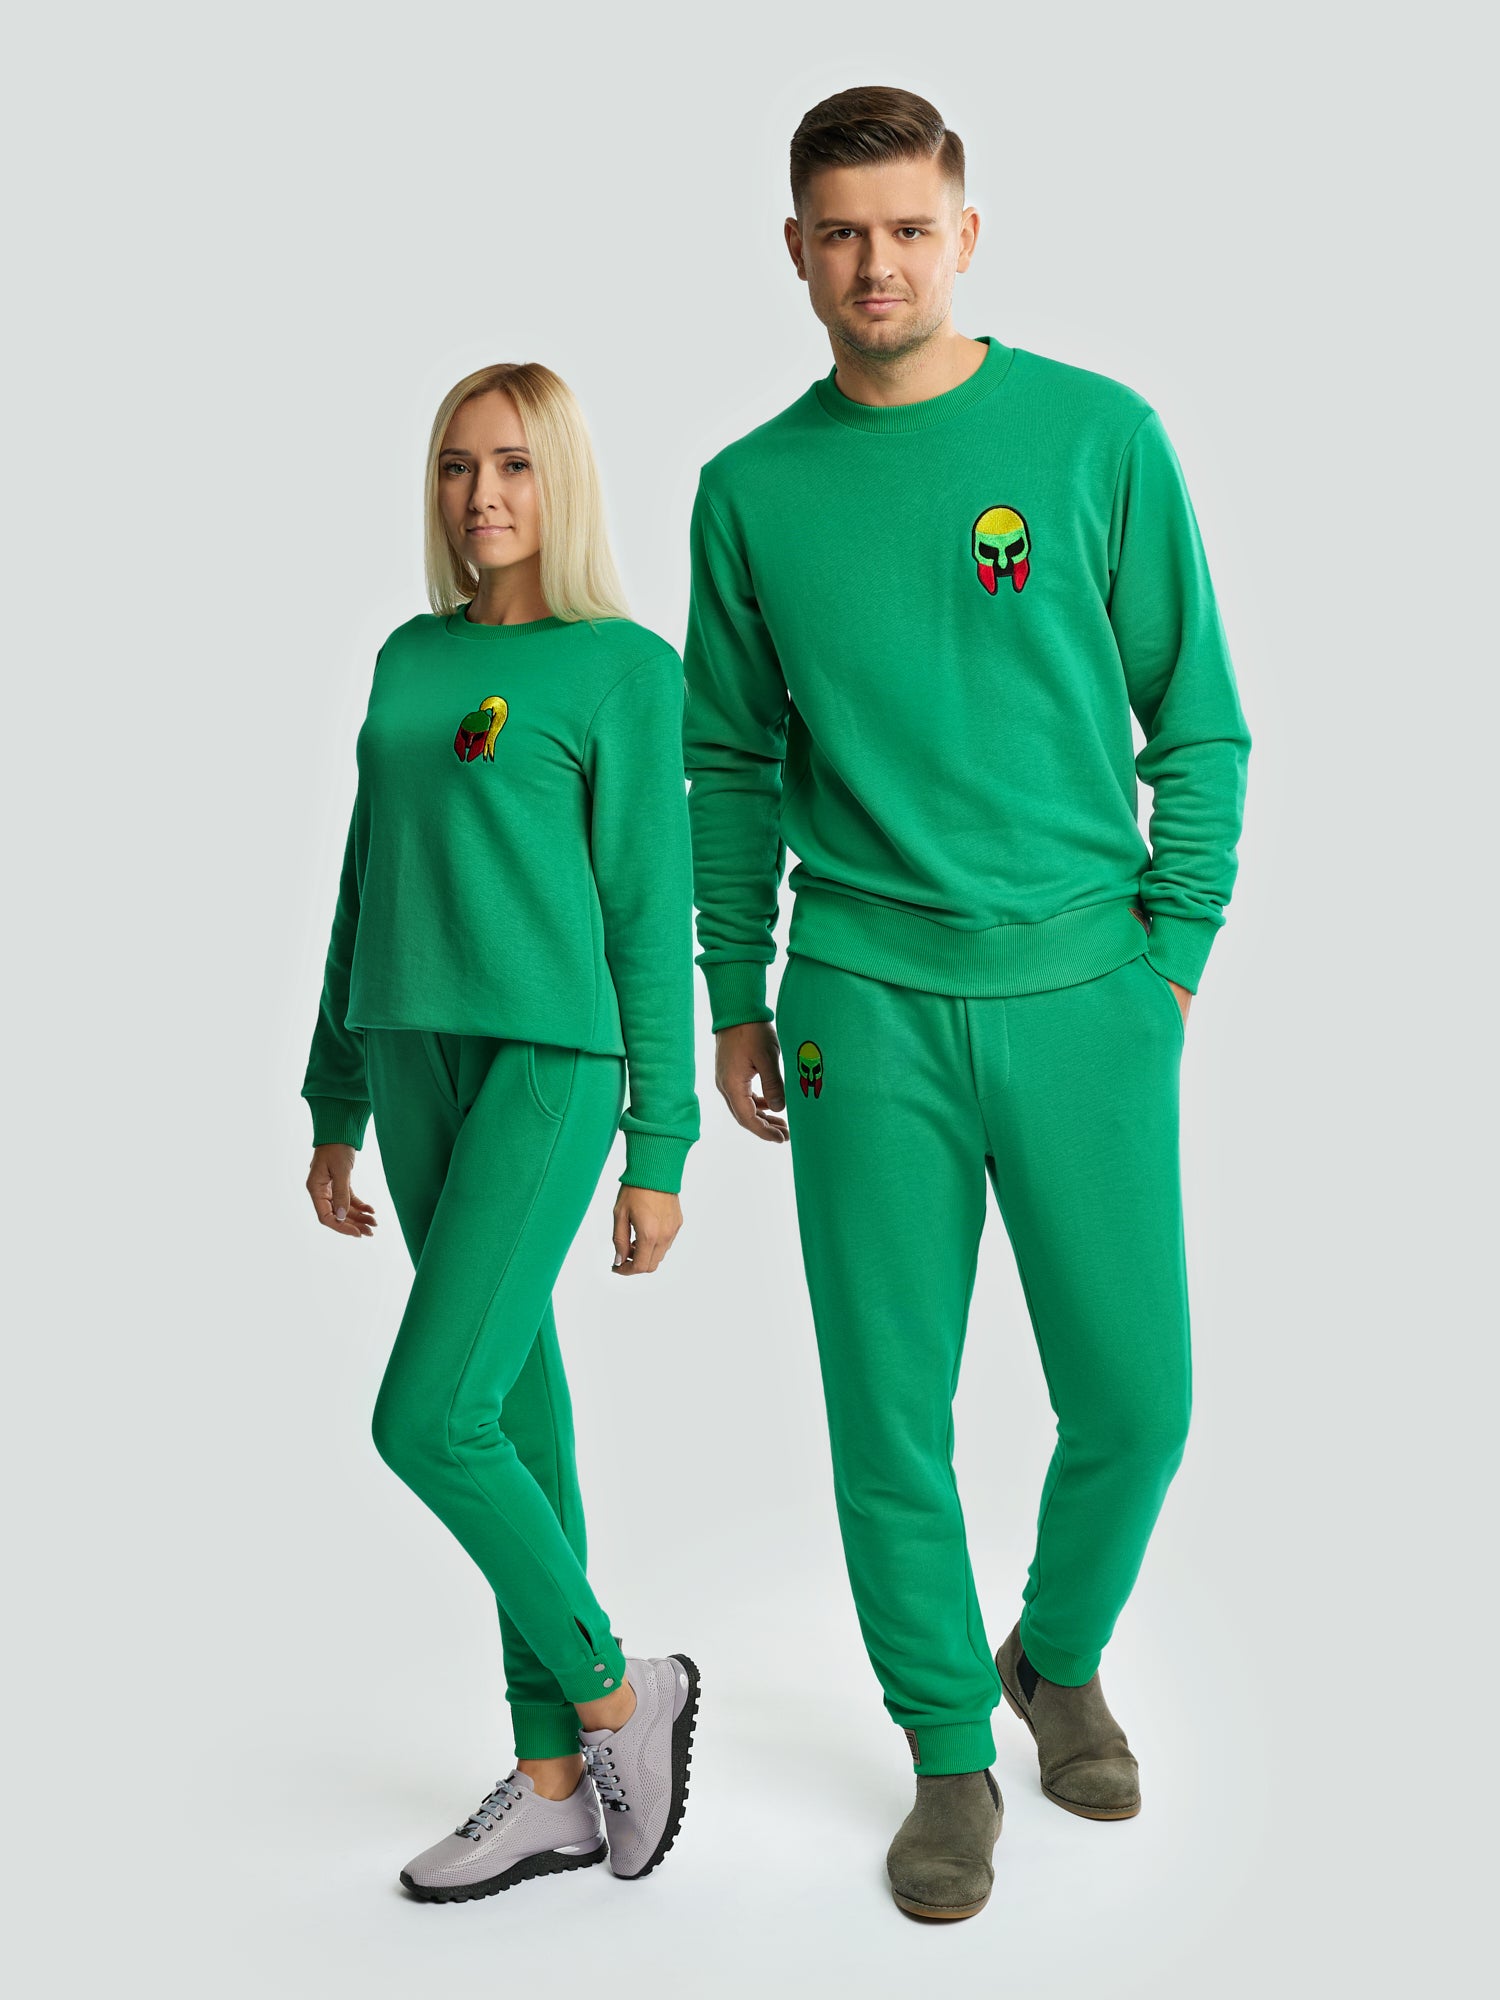 Žalias džemperis vyrams "Los Lituanos" su siuvinėta trispalve - Losmados